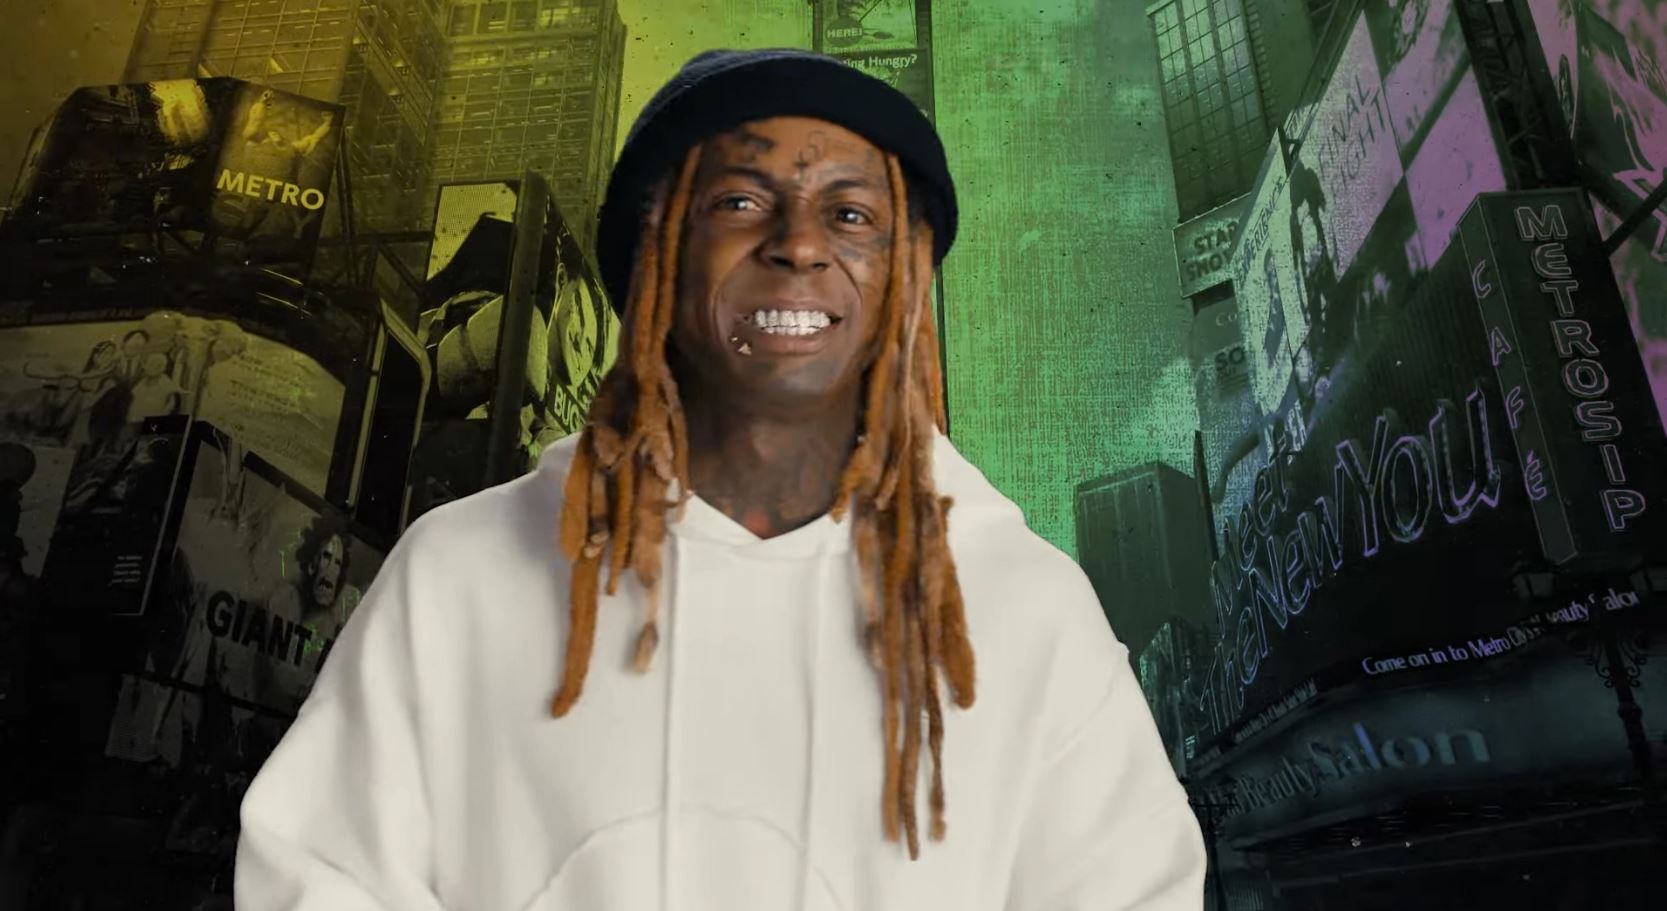 Lil Wayne street fighter 6 showcase arabgamerz عرب جيمرز ليل واين ستريت فايتر 6